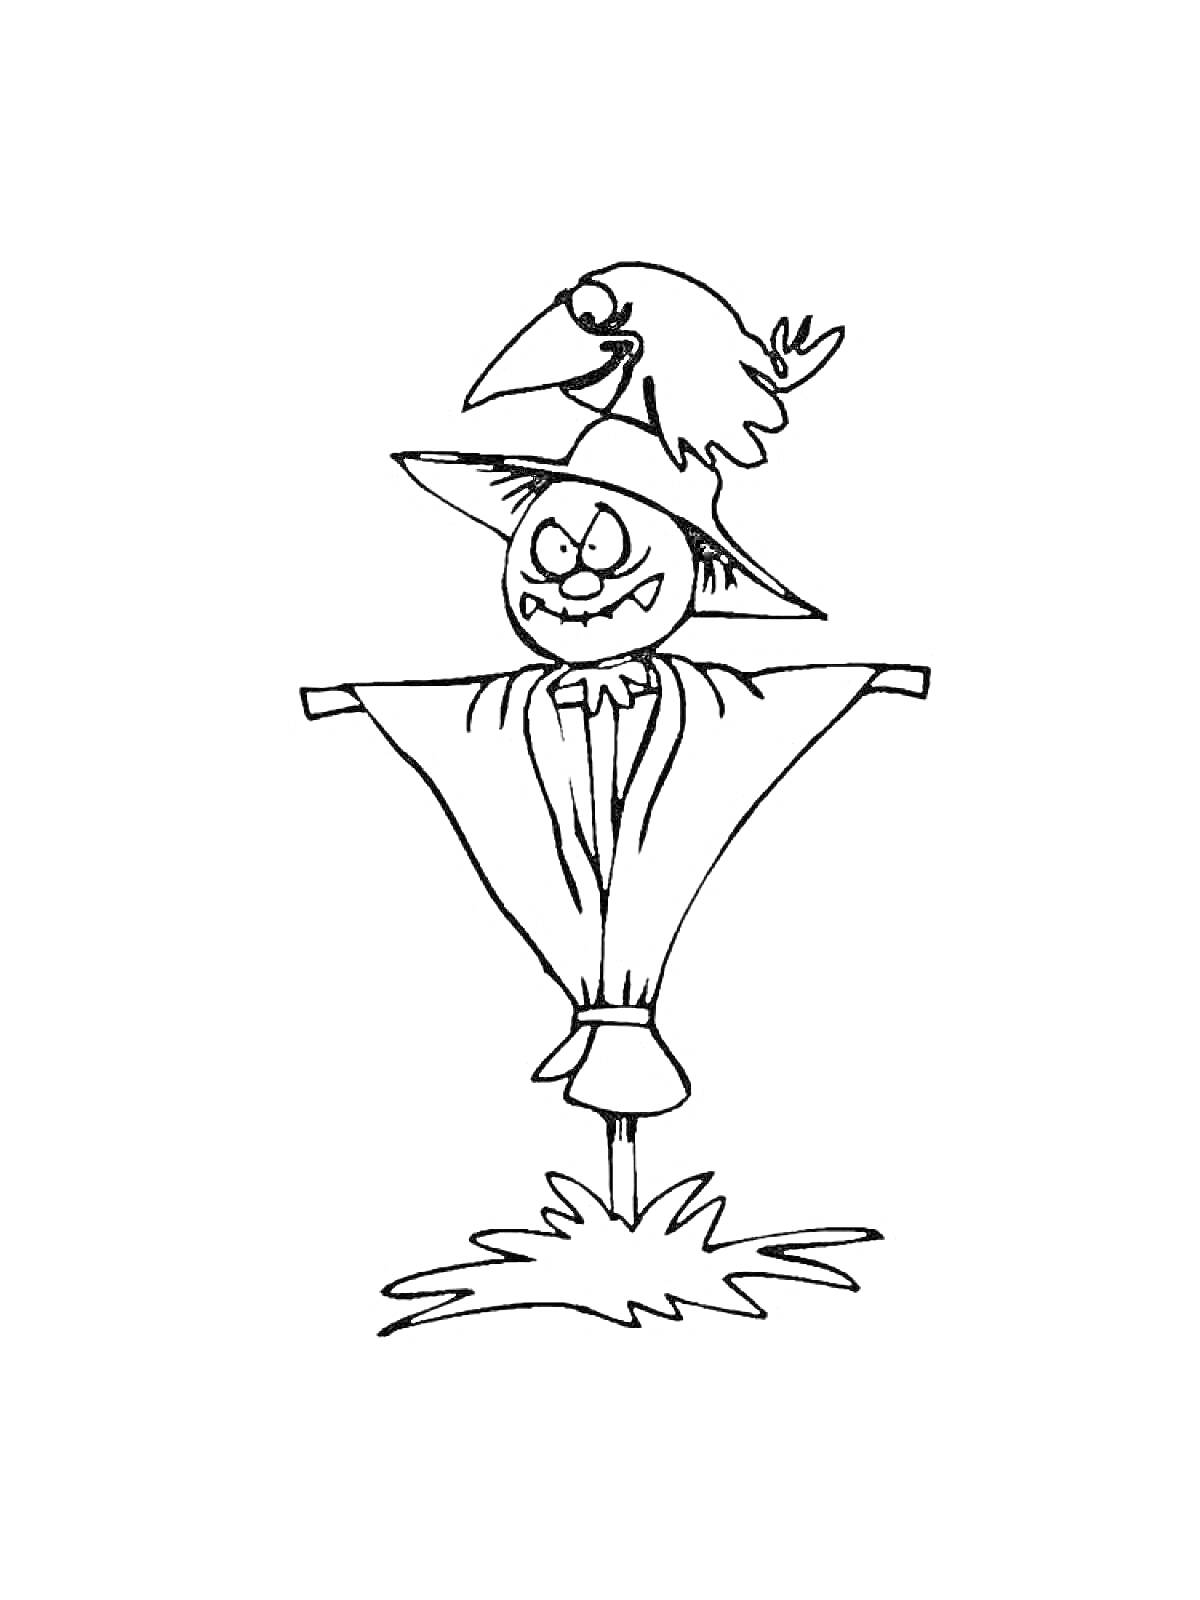 Раскраска Чучело со злым выражением лица и вороной на голове, стоит на траве